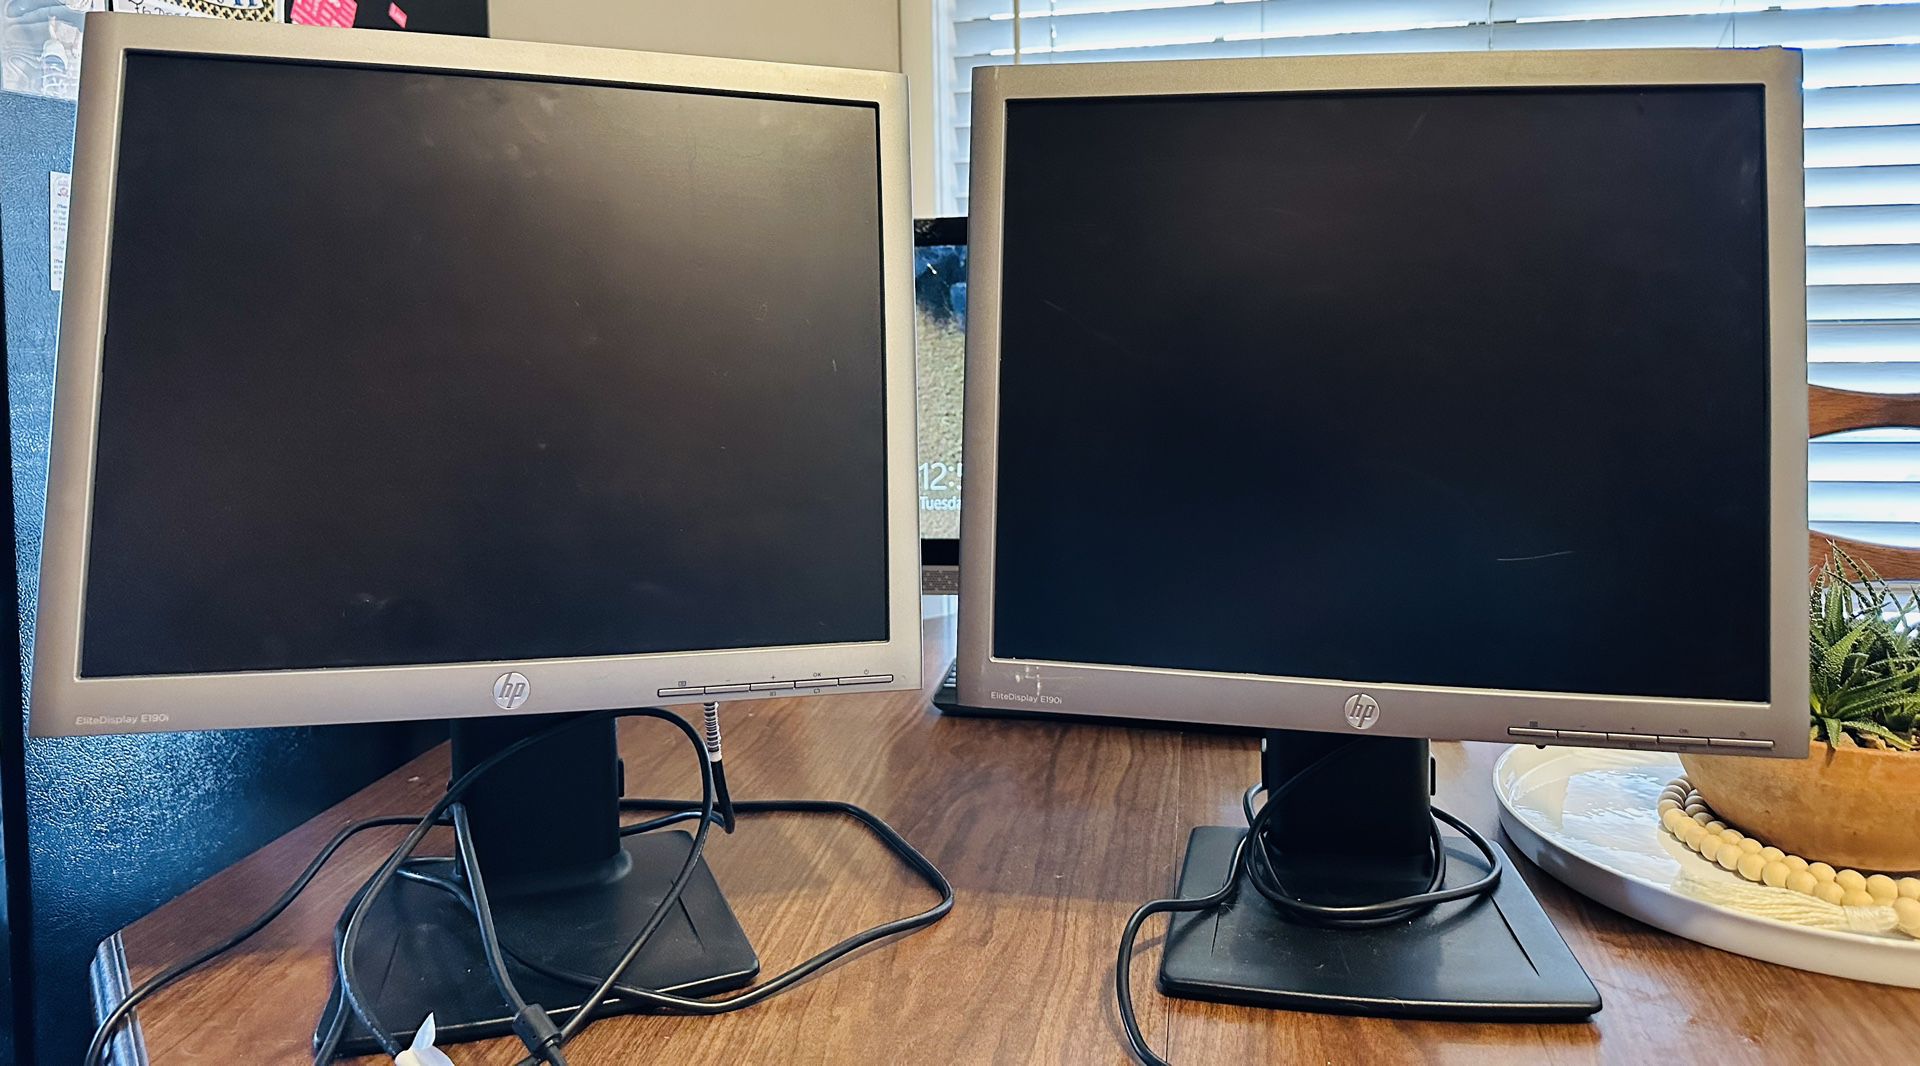 HP Computer Monitors 